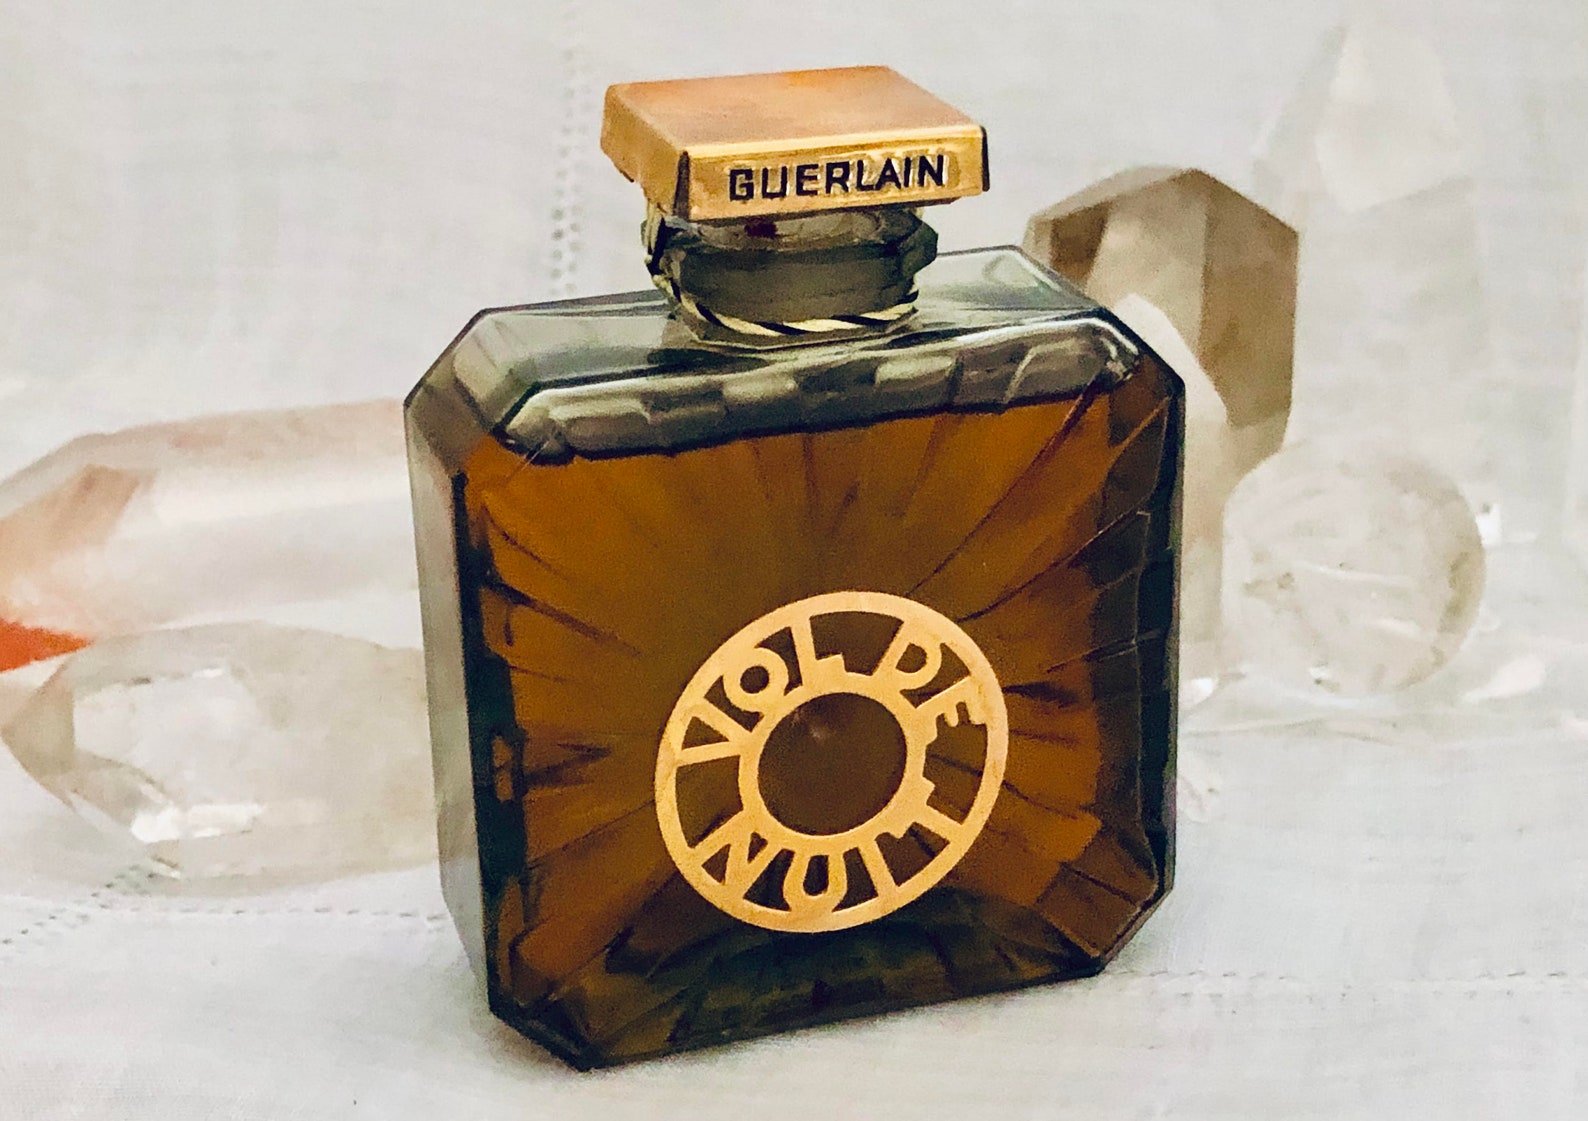 Guerlain Vol de Nuit 30 ml. or 1 oz. Flacon Pure Parfum | Etsy